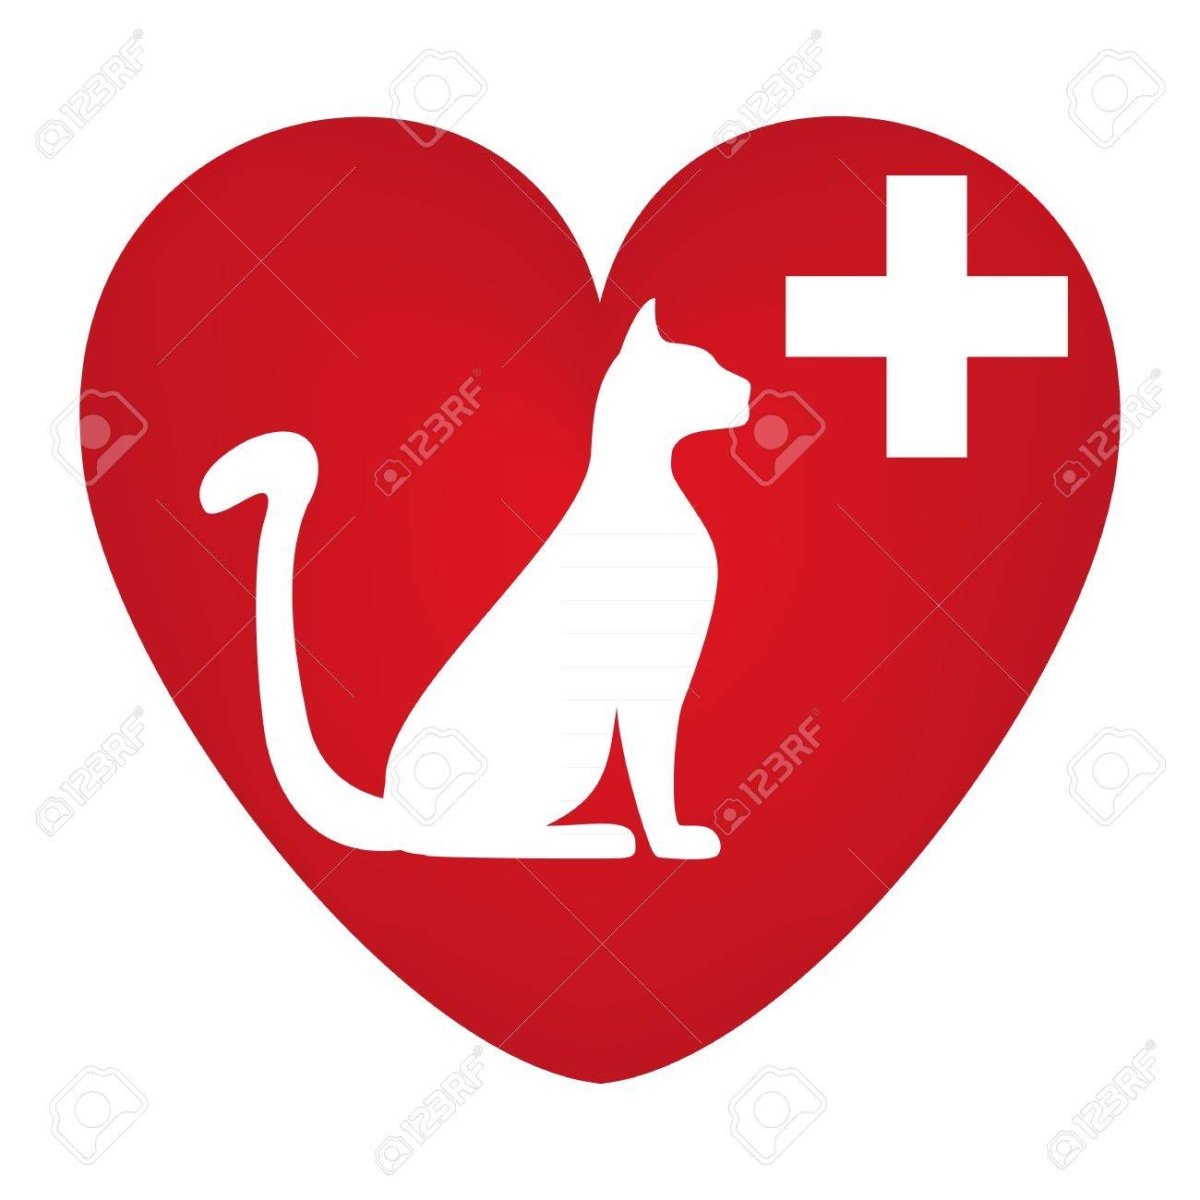 Ветеринар впр. Значок ветеринарной клиники. Ветеринарная клиника лого. Логотип для ветеринарной клиники для кошек. Иконка кота для ветеринарной клиники.